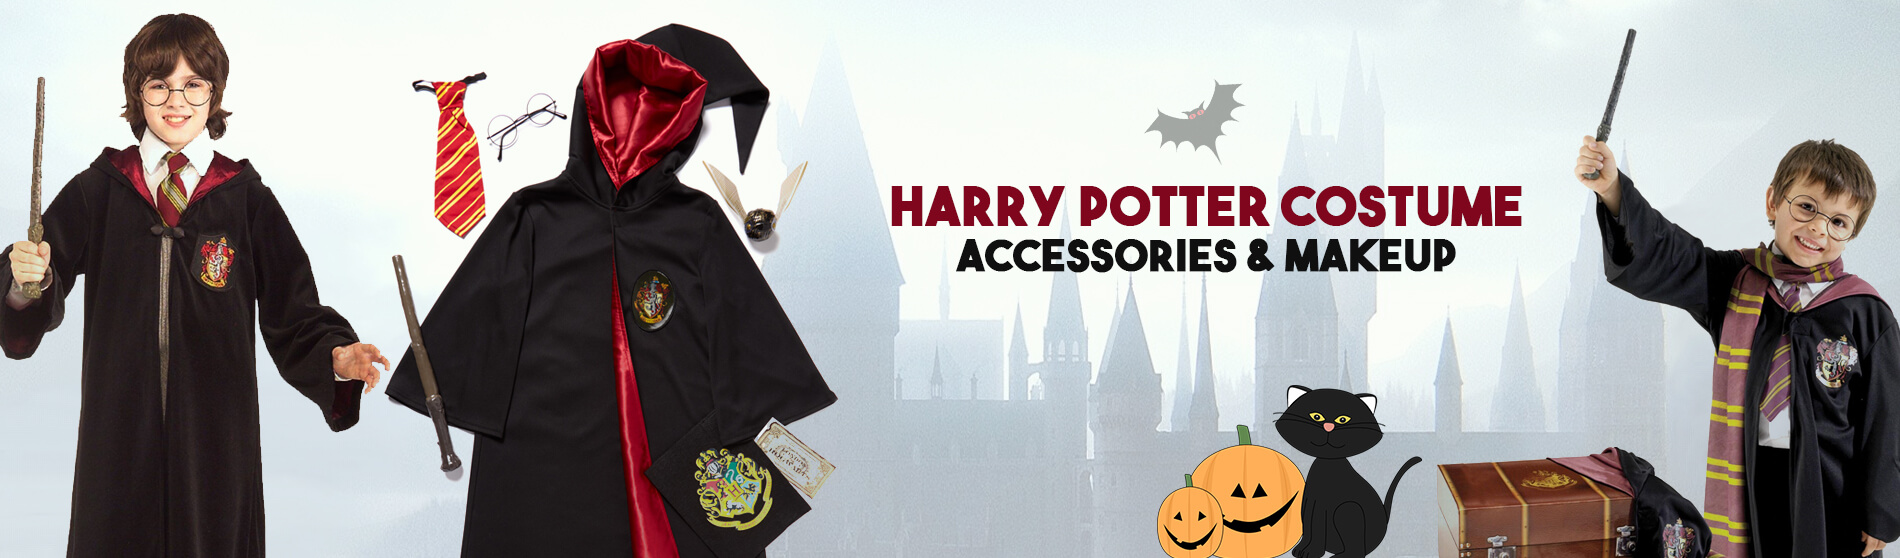 Glendale Halloween : Harry-Potter-Costume-Accessories-Makeup